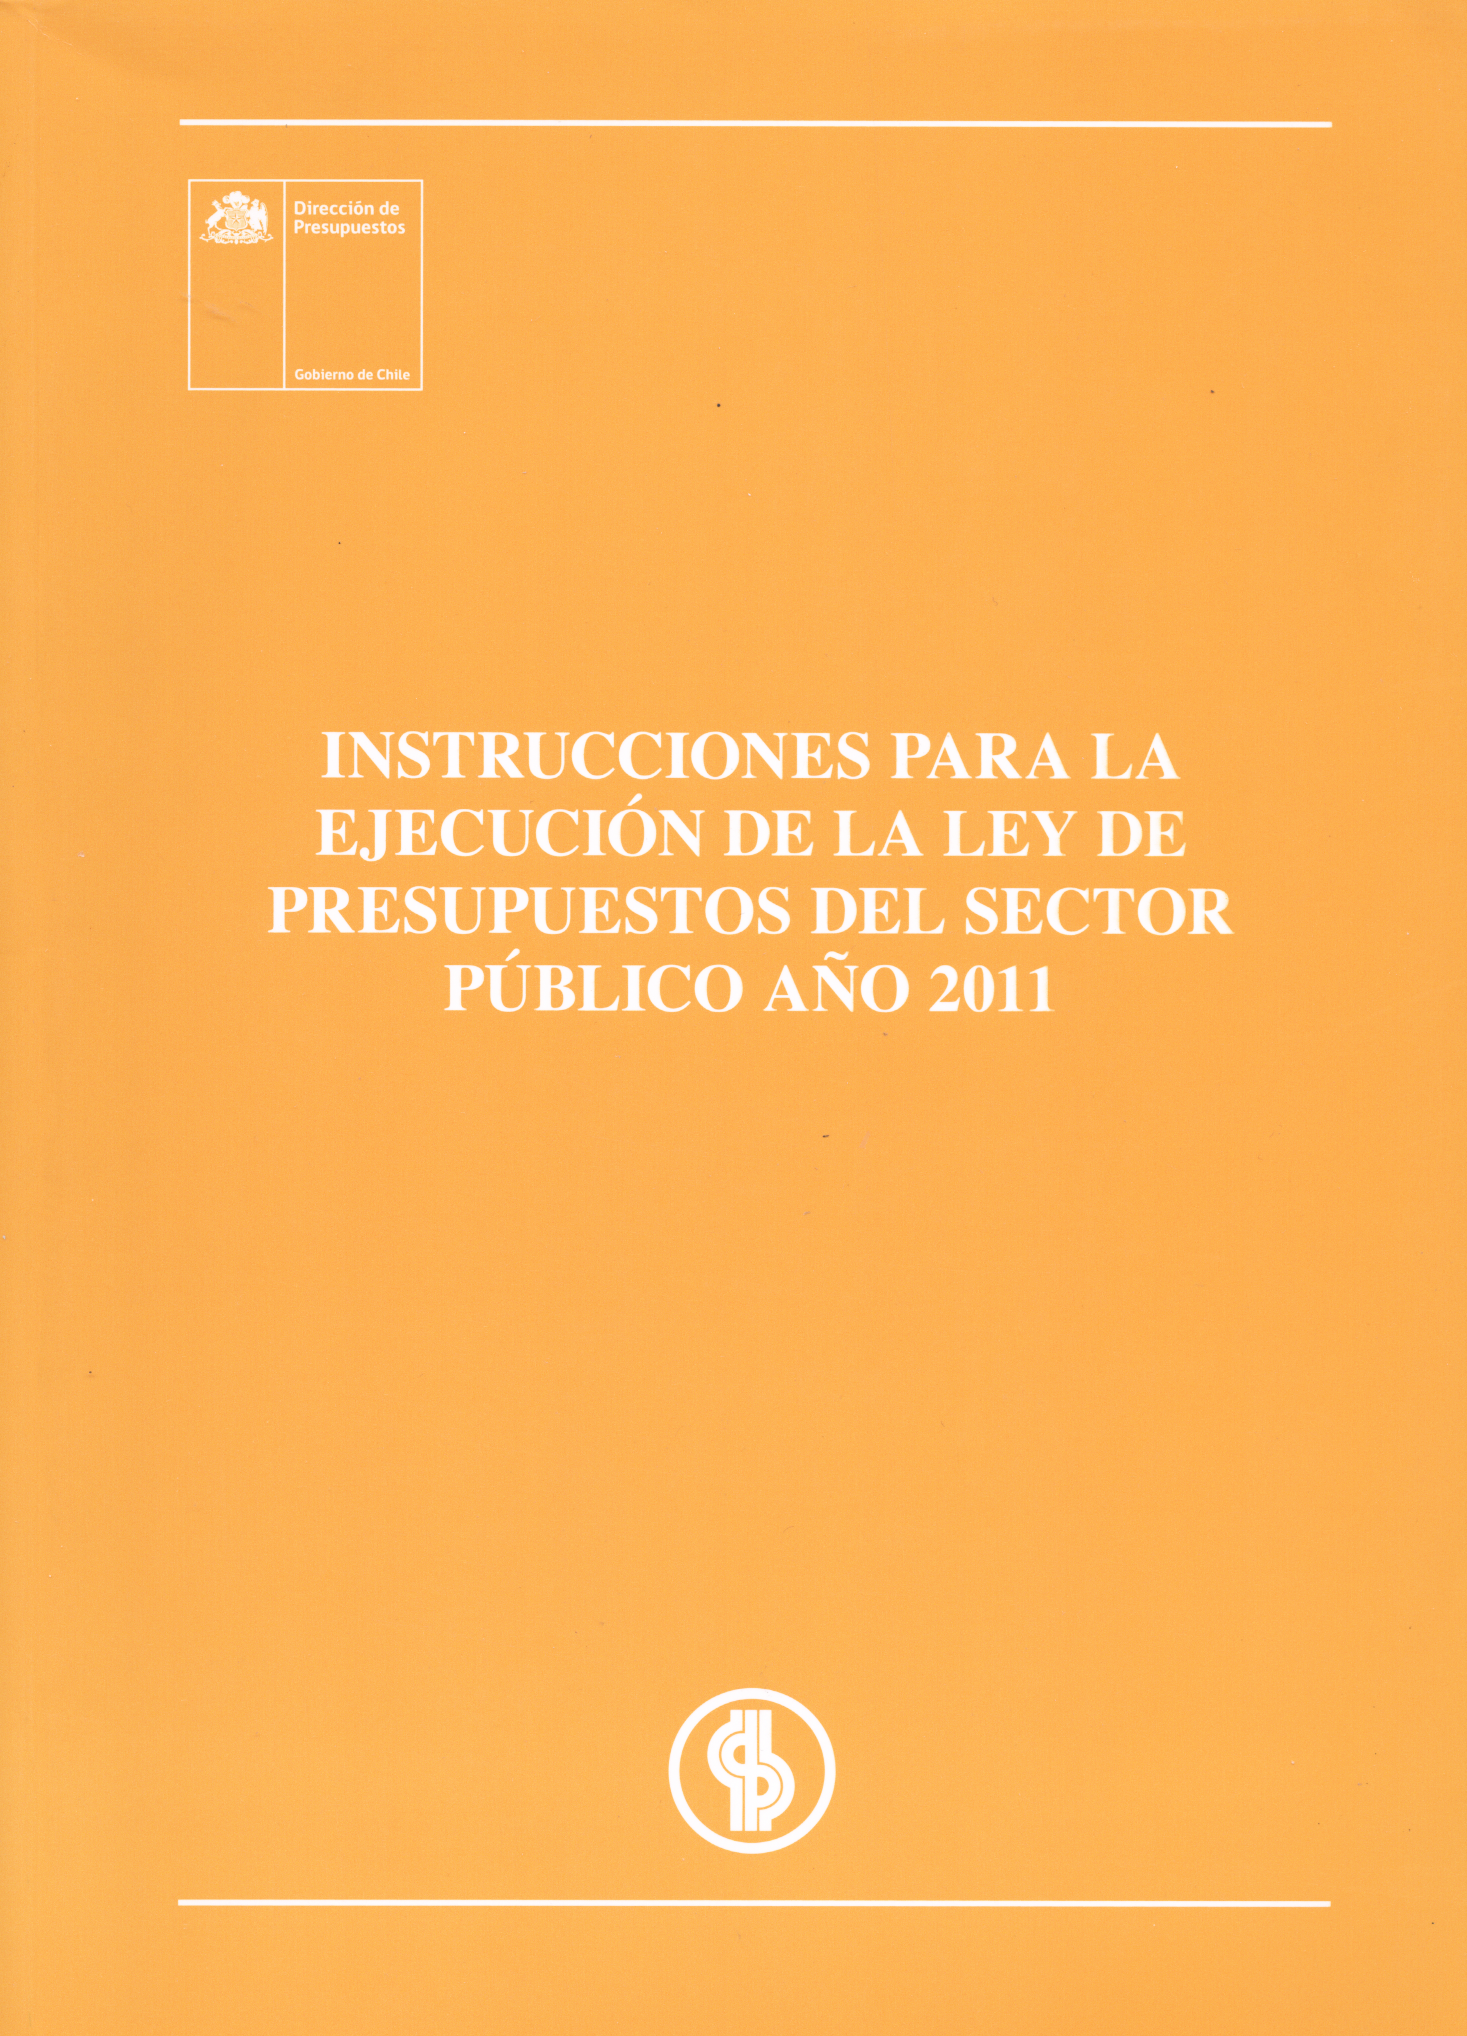 Instrucciones para ejecución de la ley de presupuestos del sector público año 2011